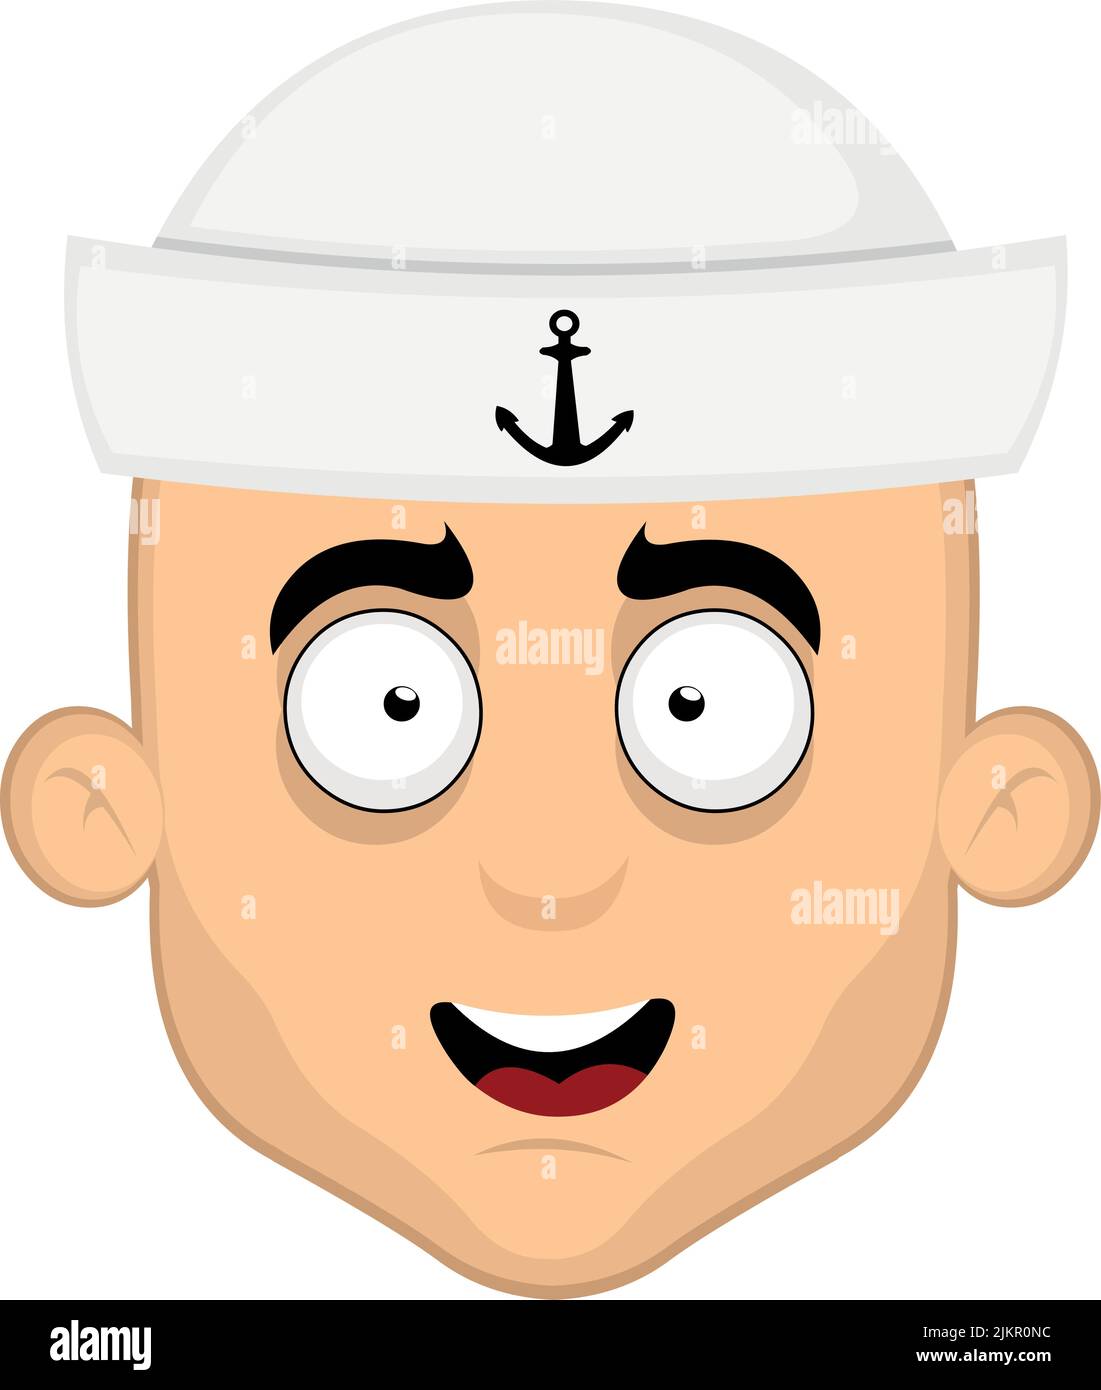 Vektordarstellung des Gesichts eines Cartoon-Seemanns Stock Vektor